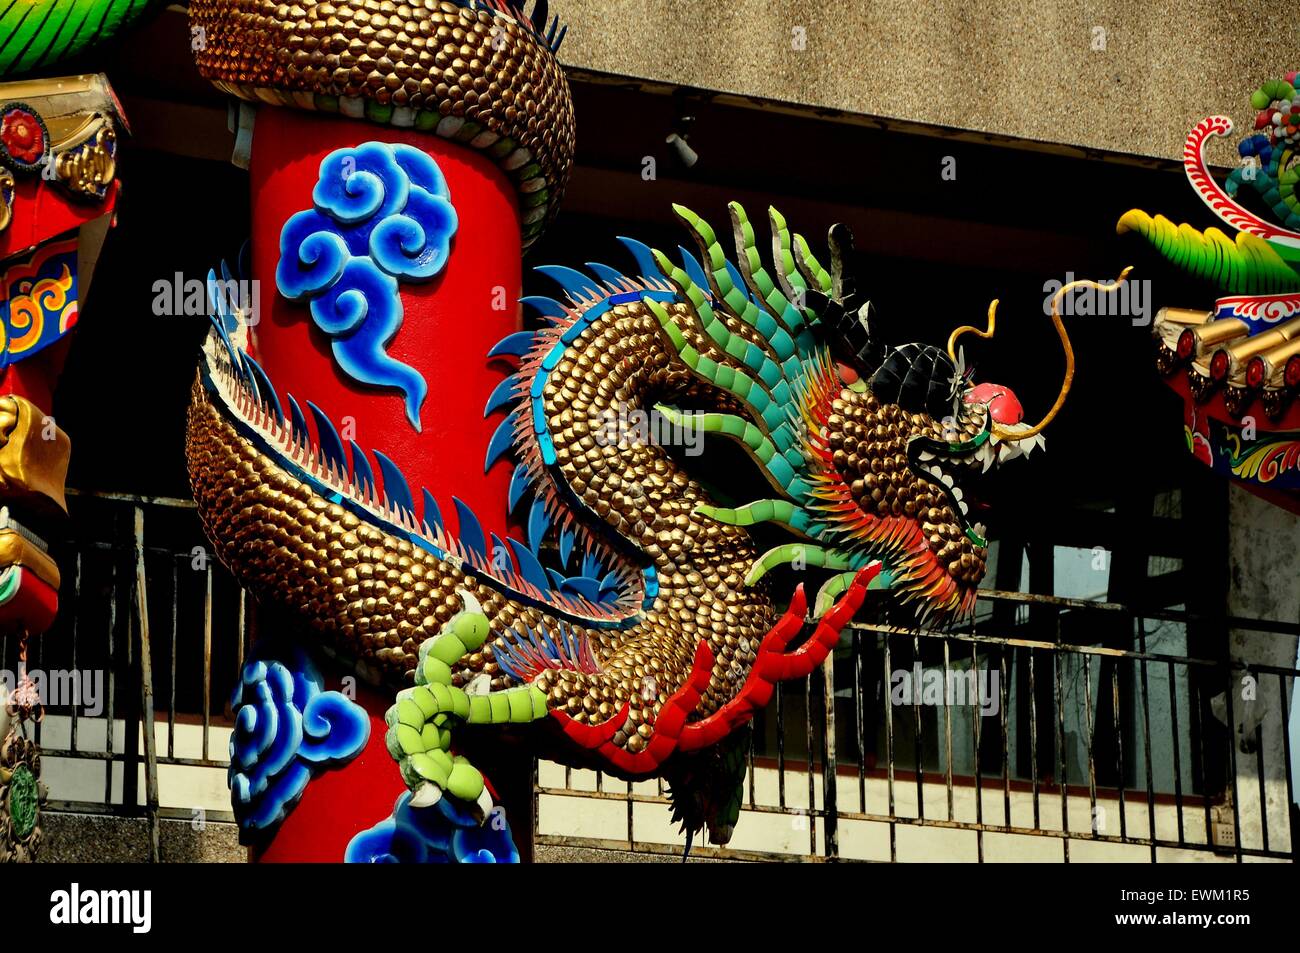 Chiang Mai, Thaïlande : bois sculpté dragon enroulé autour d'une colonne à l'Pung Tao Gong Temple Ancestral chinois Banque D'Images